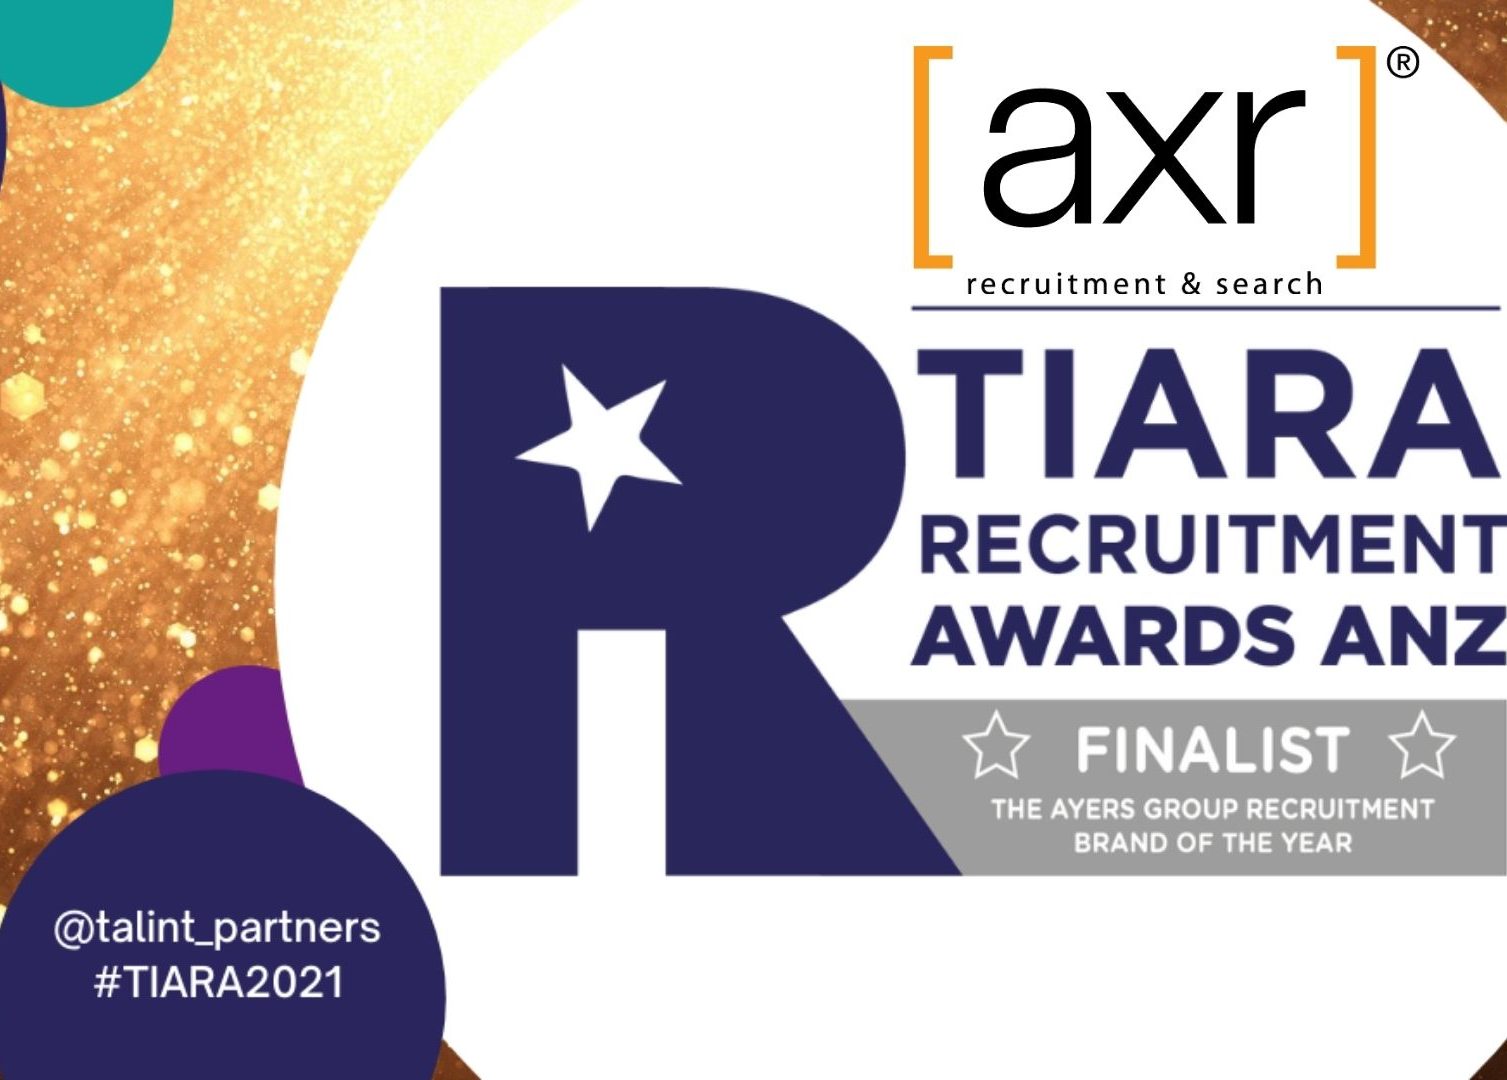 TIARA Recruitment awards ANZ- axr recruitment finalist